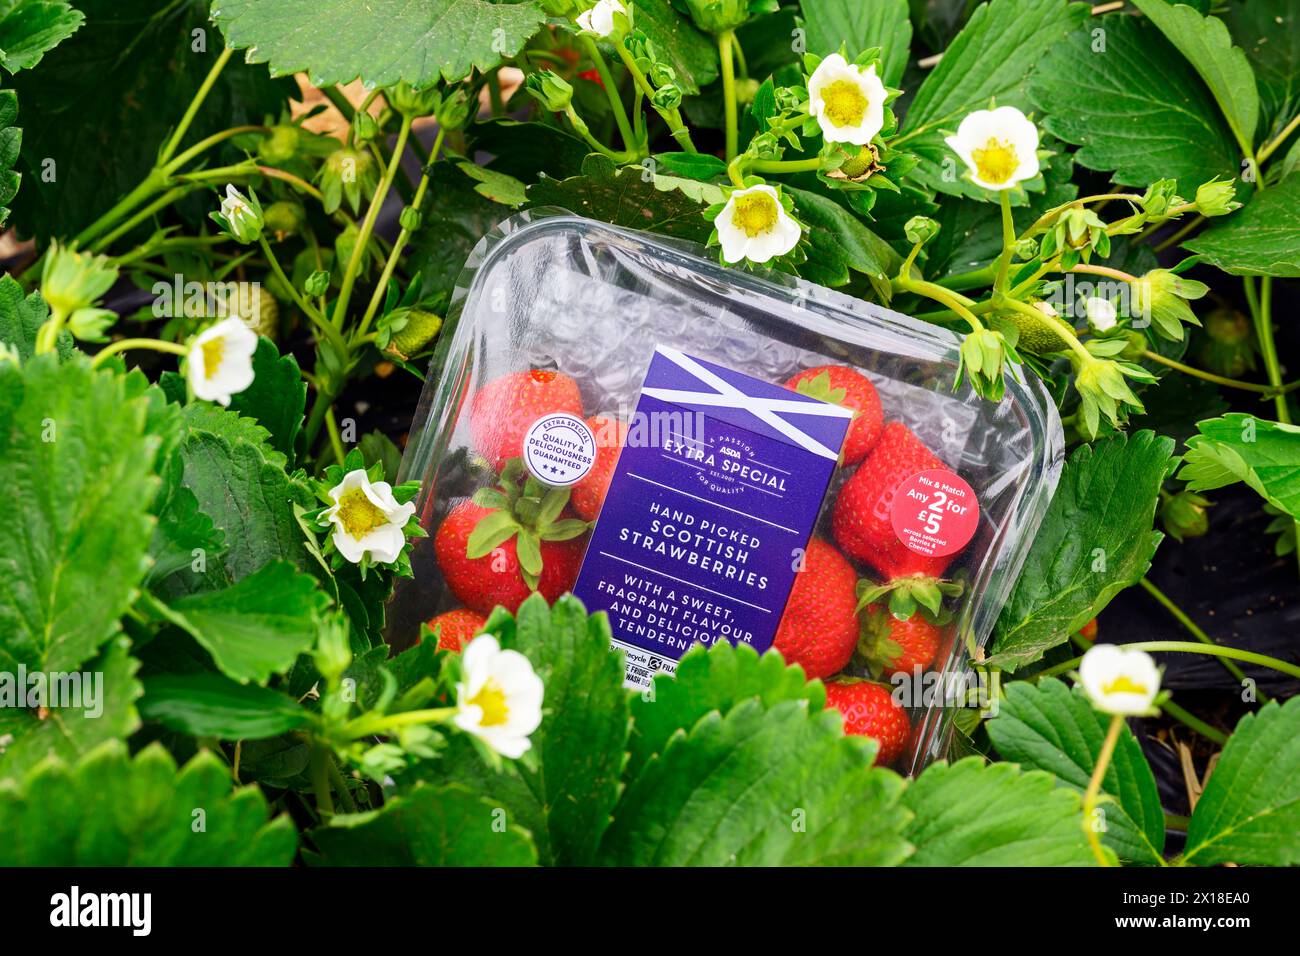 Sergei Kaminski, Soft Fruit Manager, Geddes Farms Geddes Farms, einer der größten Erdbeeren- und Getreideanbauern in Schottland, hat bereits gearbeitet Stockfoto